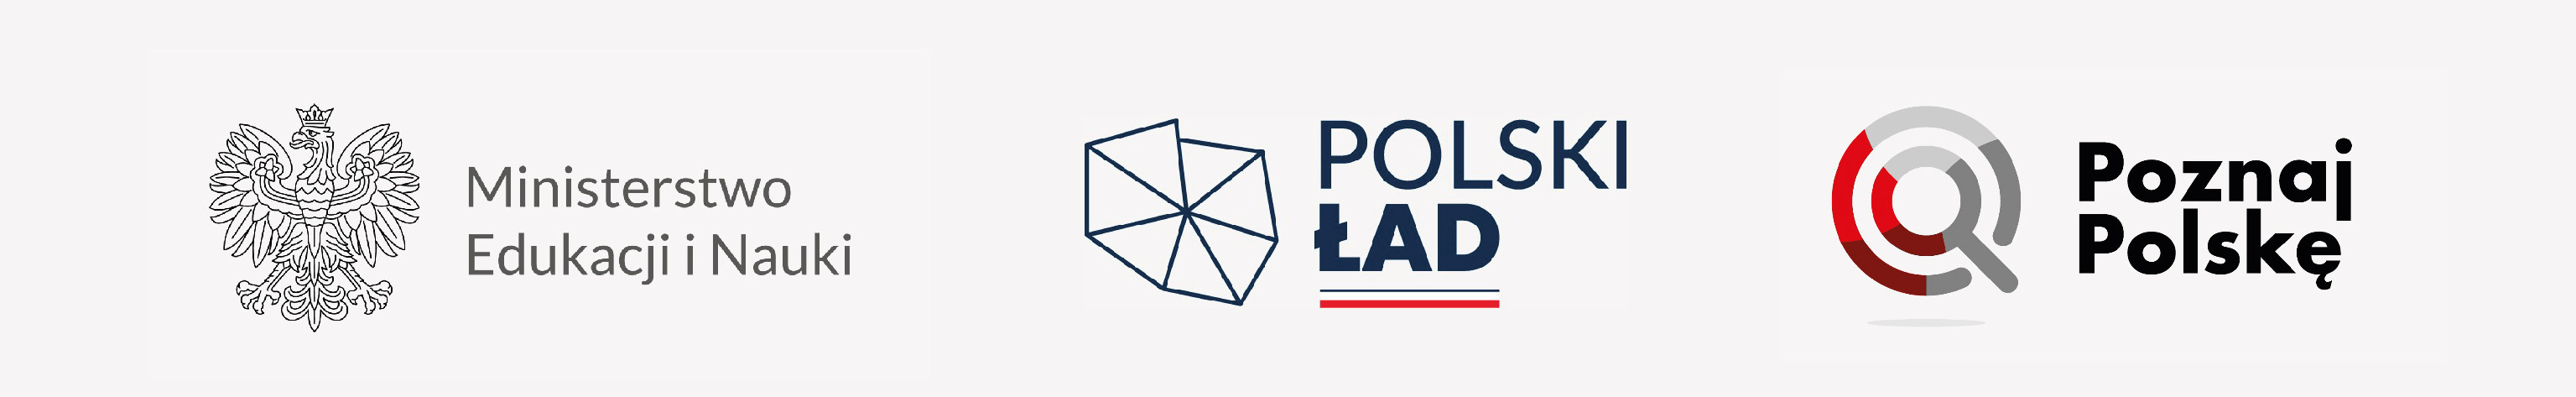 logo Ministerstwa kultury i rozwoju, polskiego ładu, poznaj Polskę